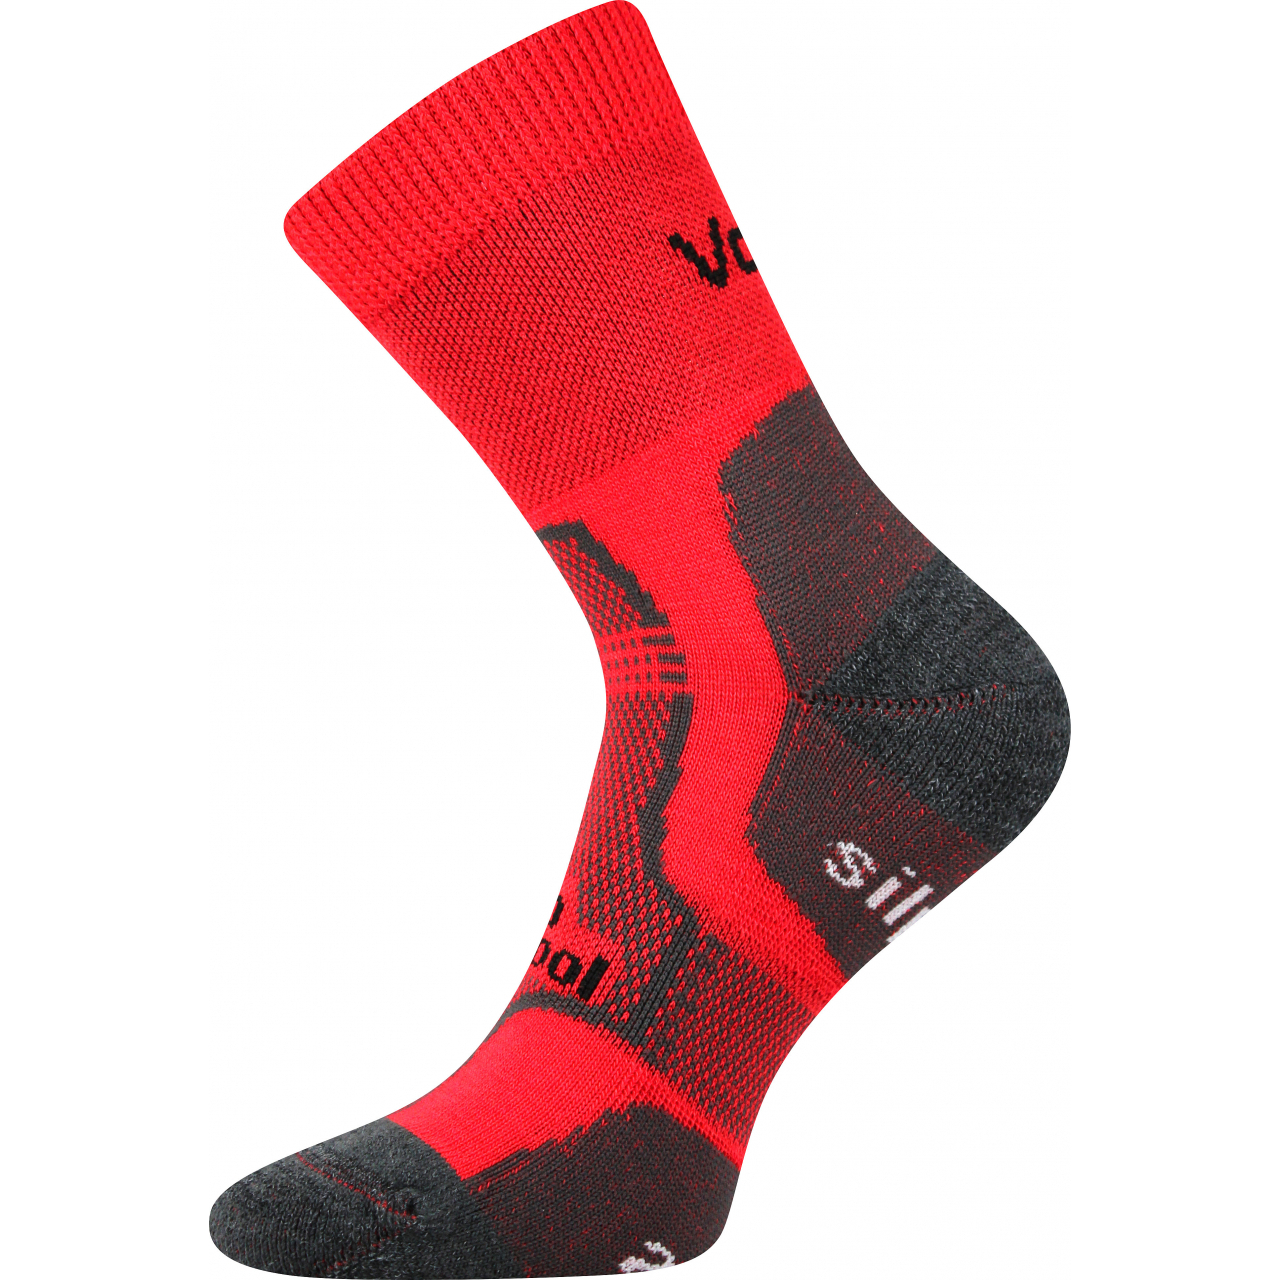 Ponožky unisex zimní Voxx Granit - červené, 43-46